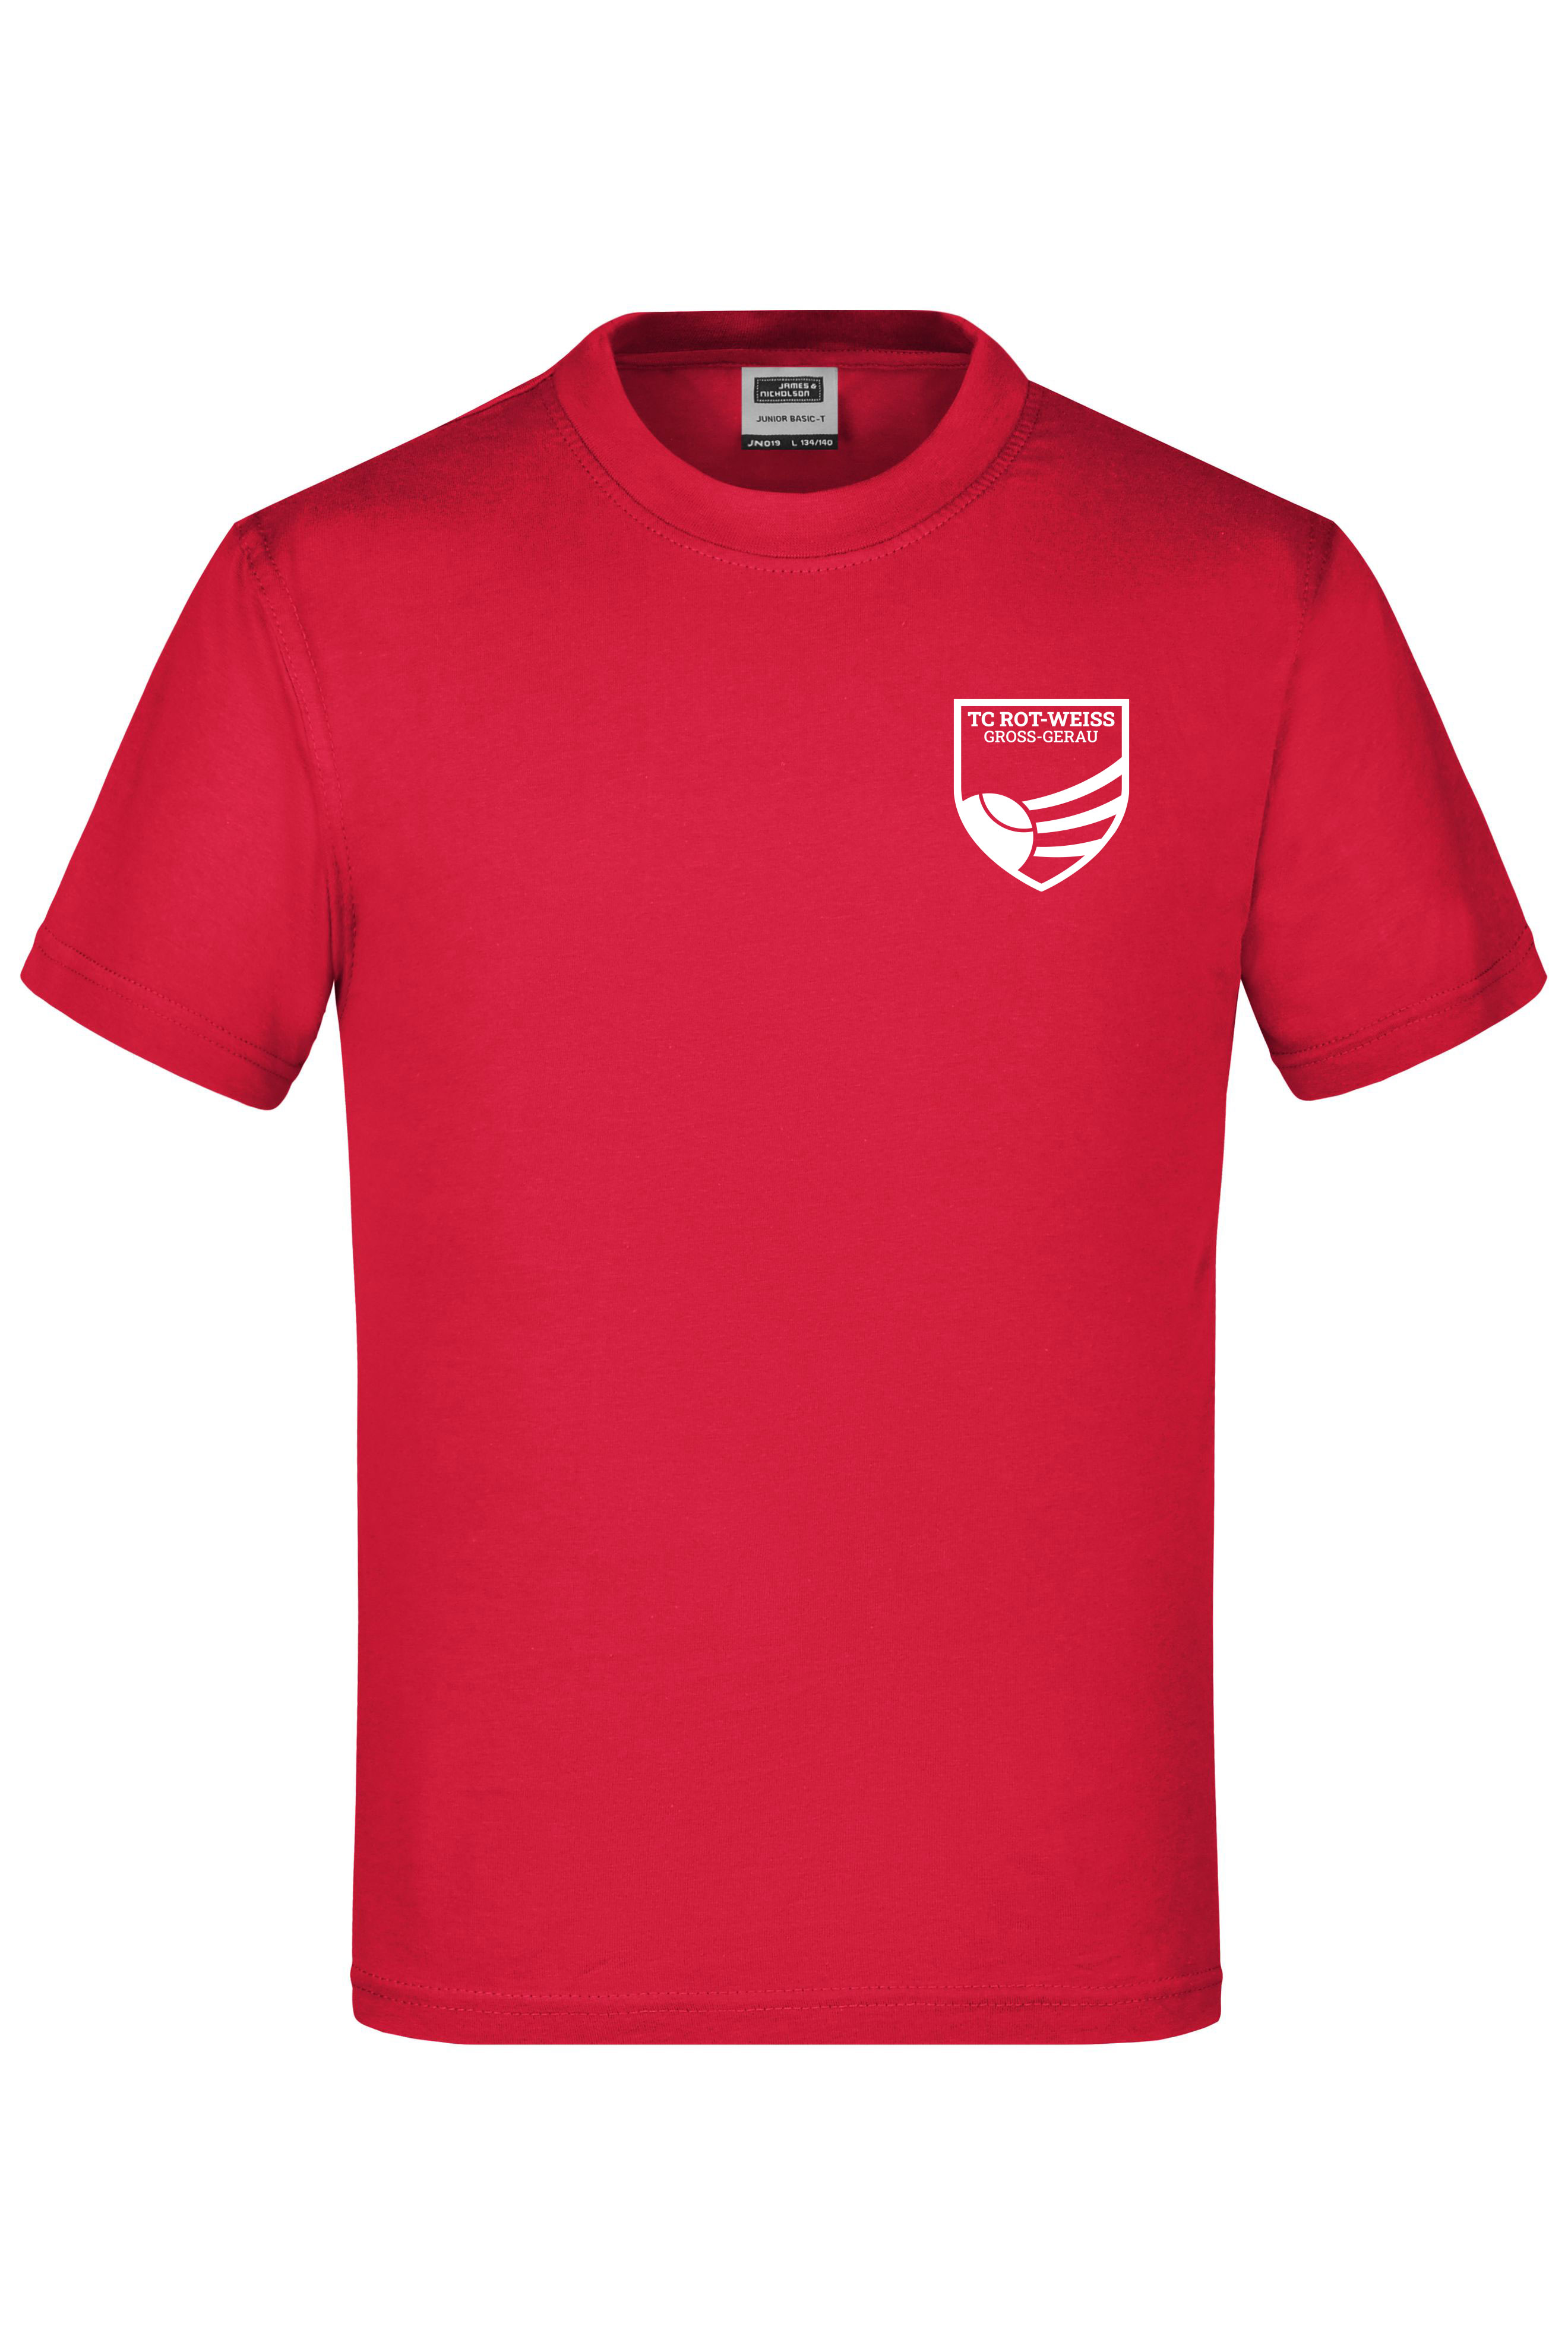 TC Rot-Weiss - Vorteil Dein Name - Kinder T-Shirt rot